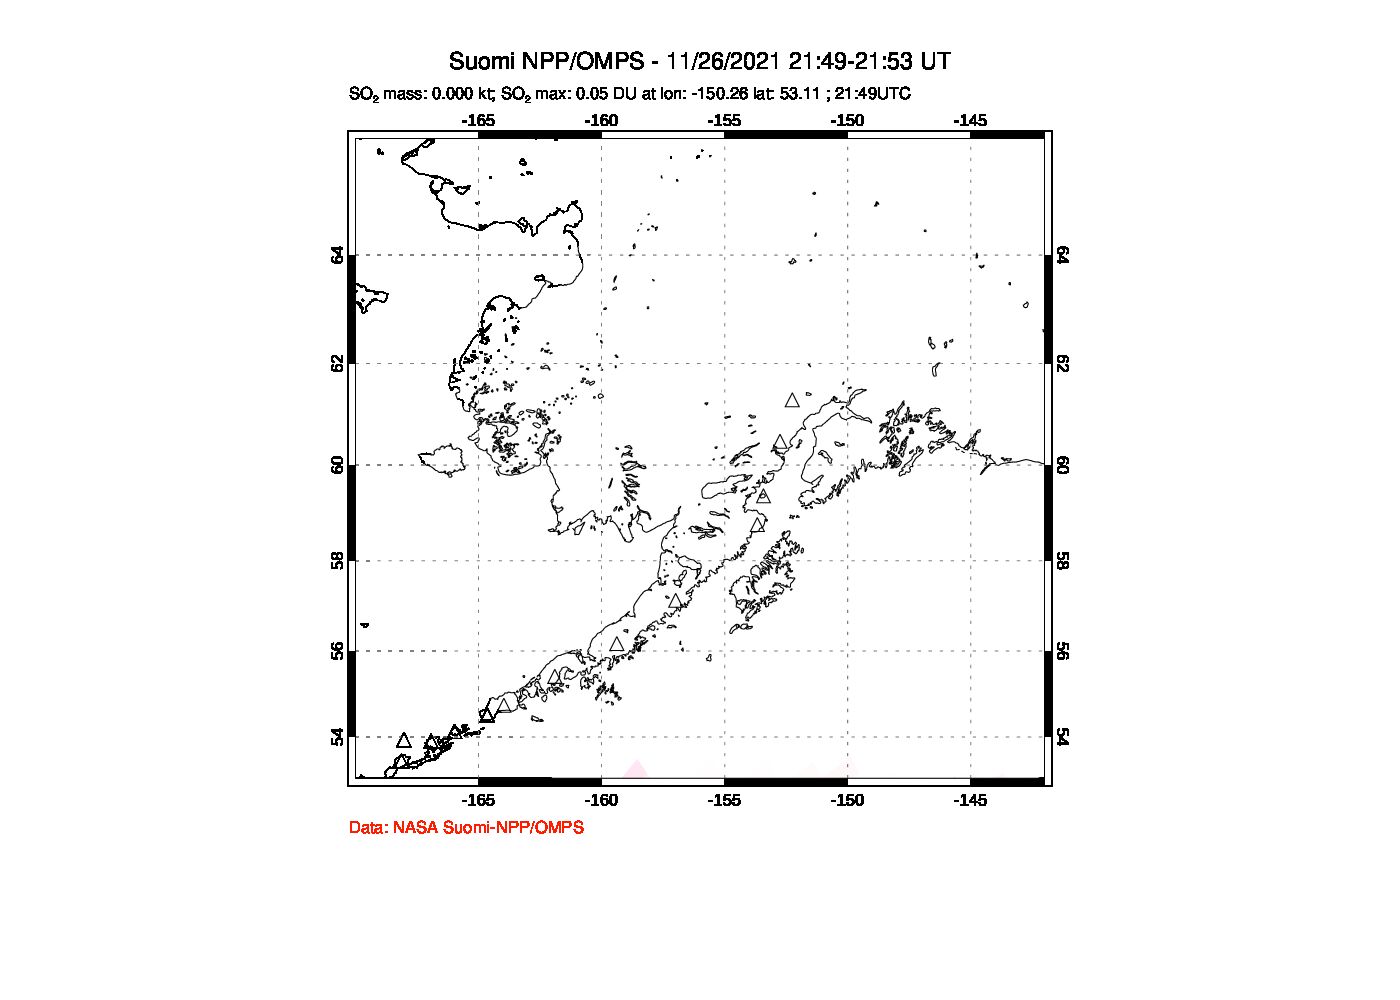 A sulfur dioxide image over Alaska, USA on Nov 26, 2021.